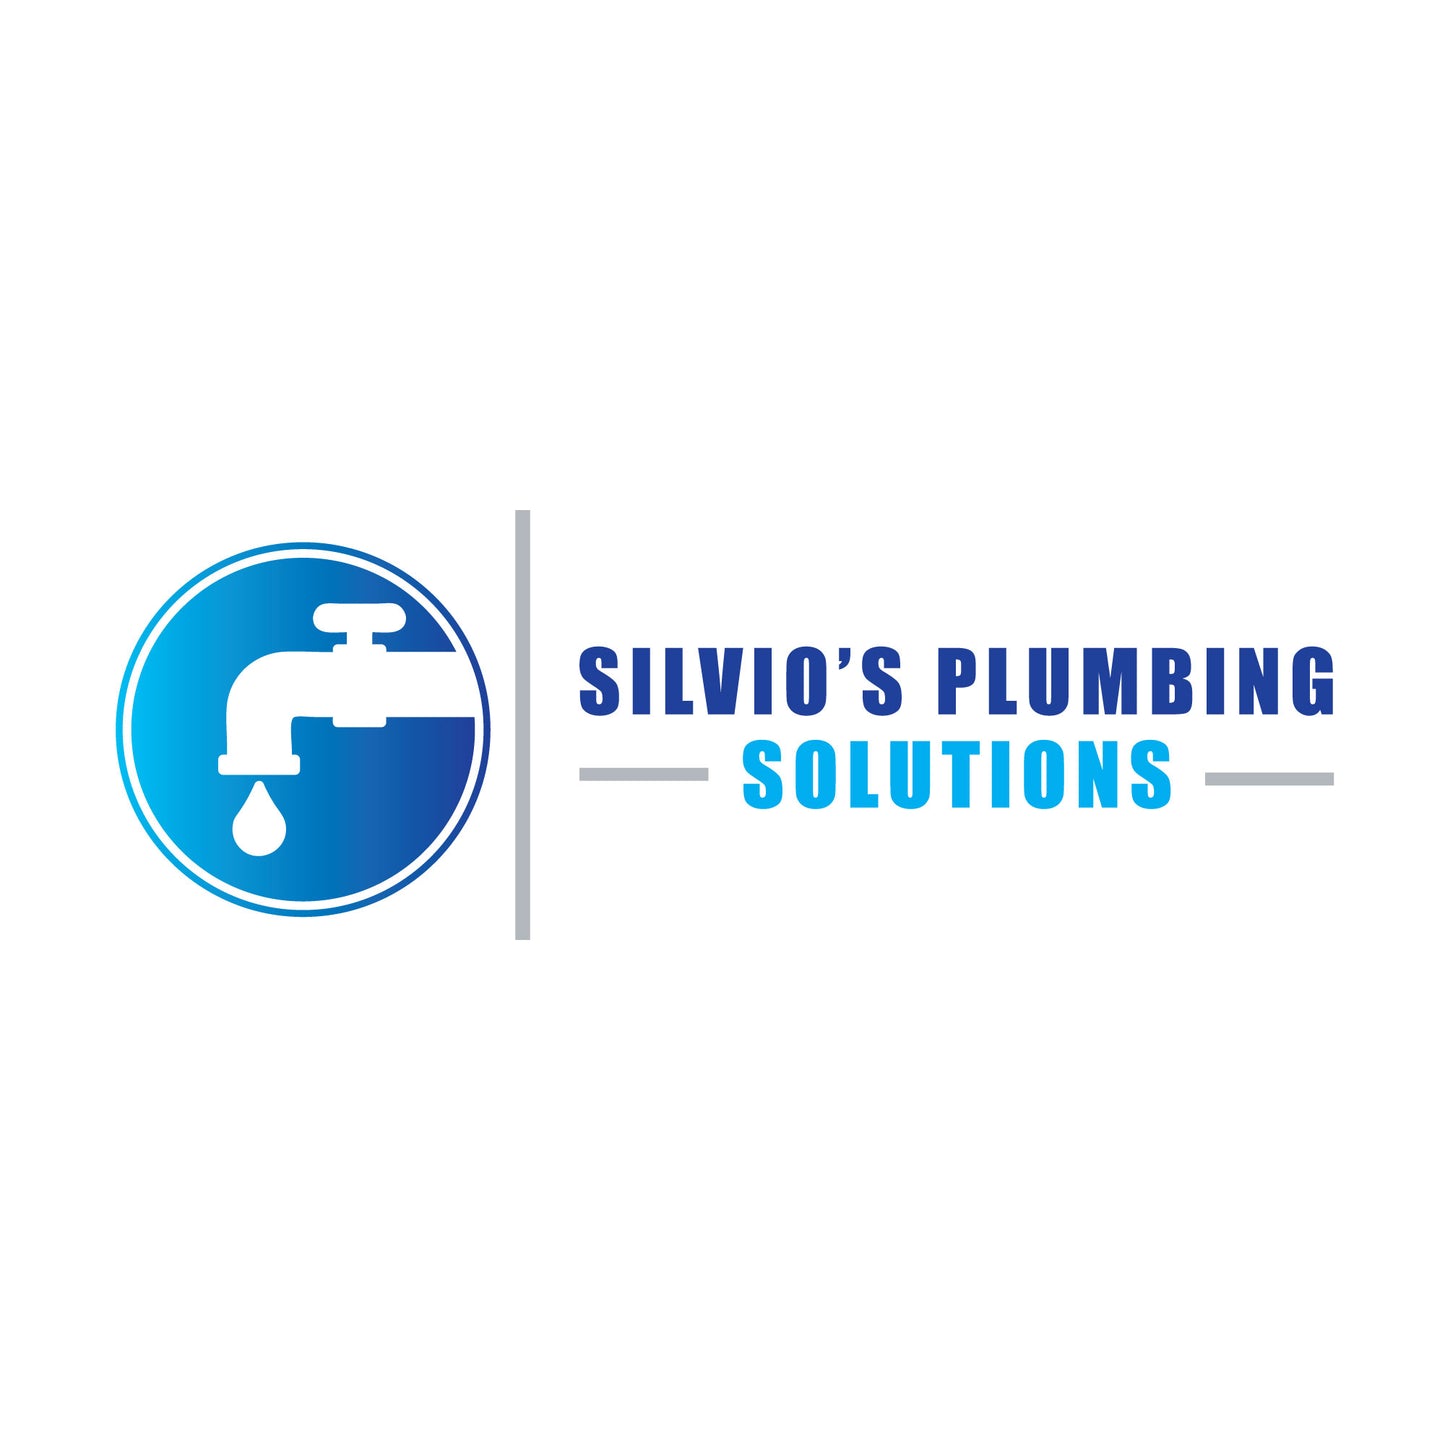 Plumbing Logo | Logo Design | Plumber | Professional Plumber | Faucet Logo | Water Drop Design | Plumbing Services | Handy Man